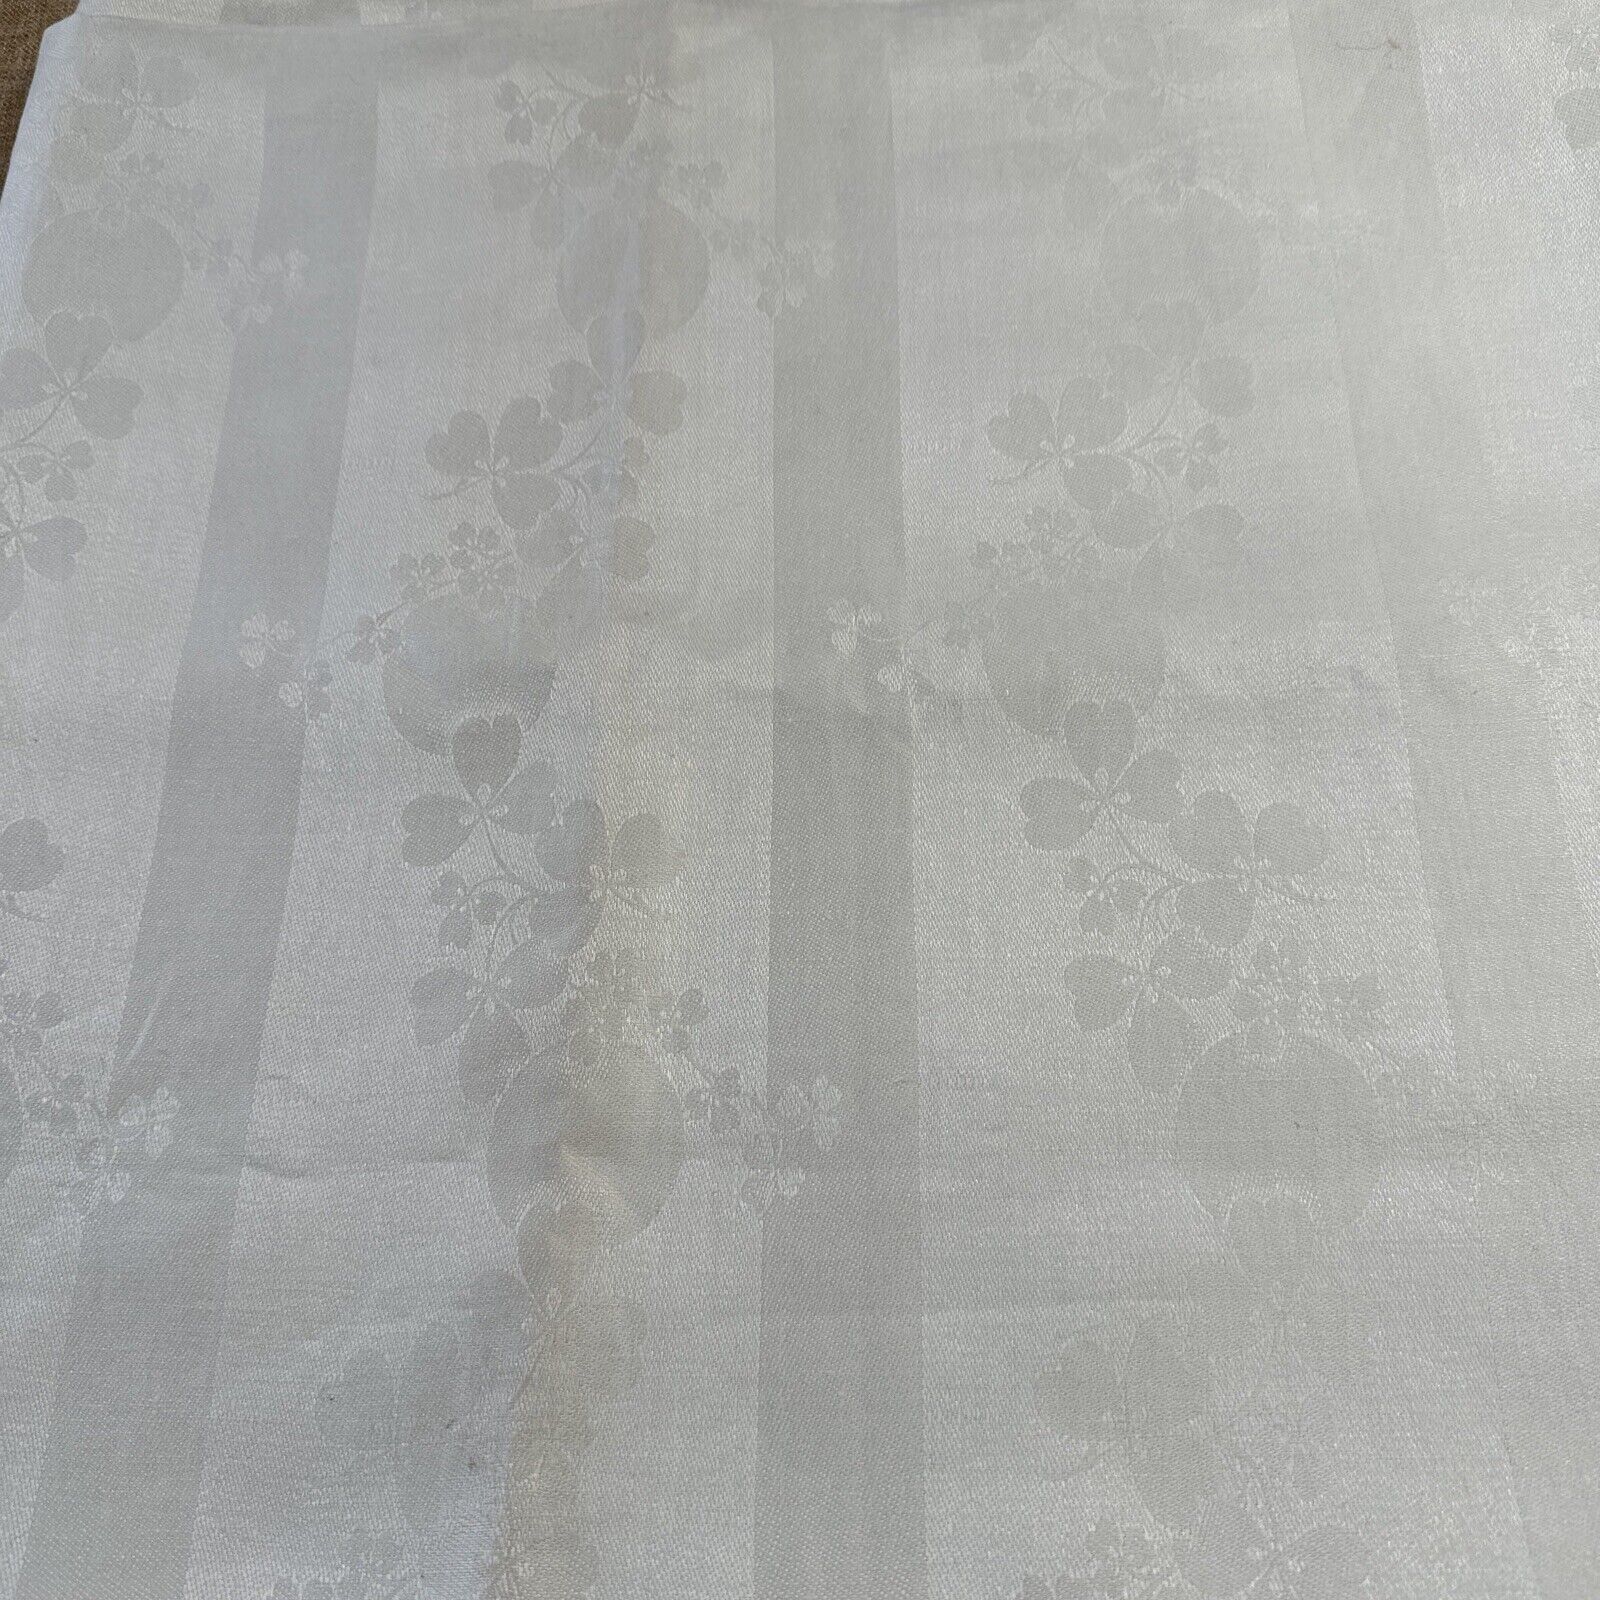 Irish Linen Tablecloth Ivory Off White Double Damask Shamrock Unused 70 X70